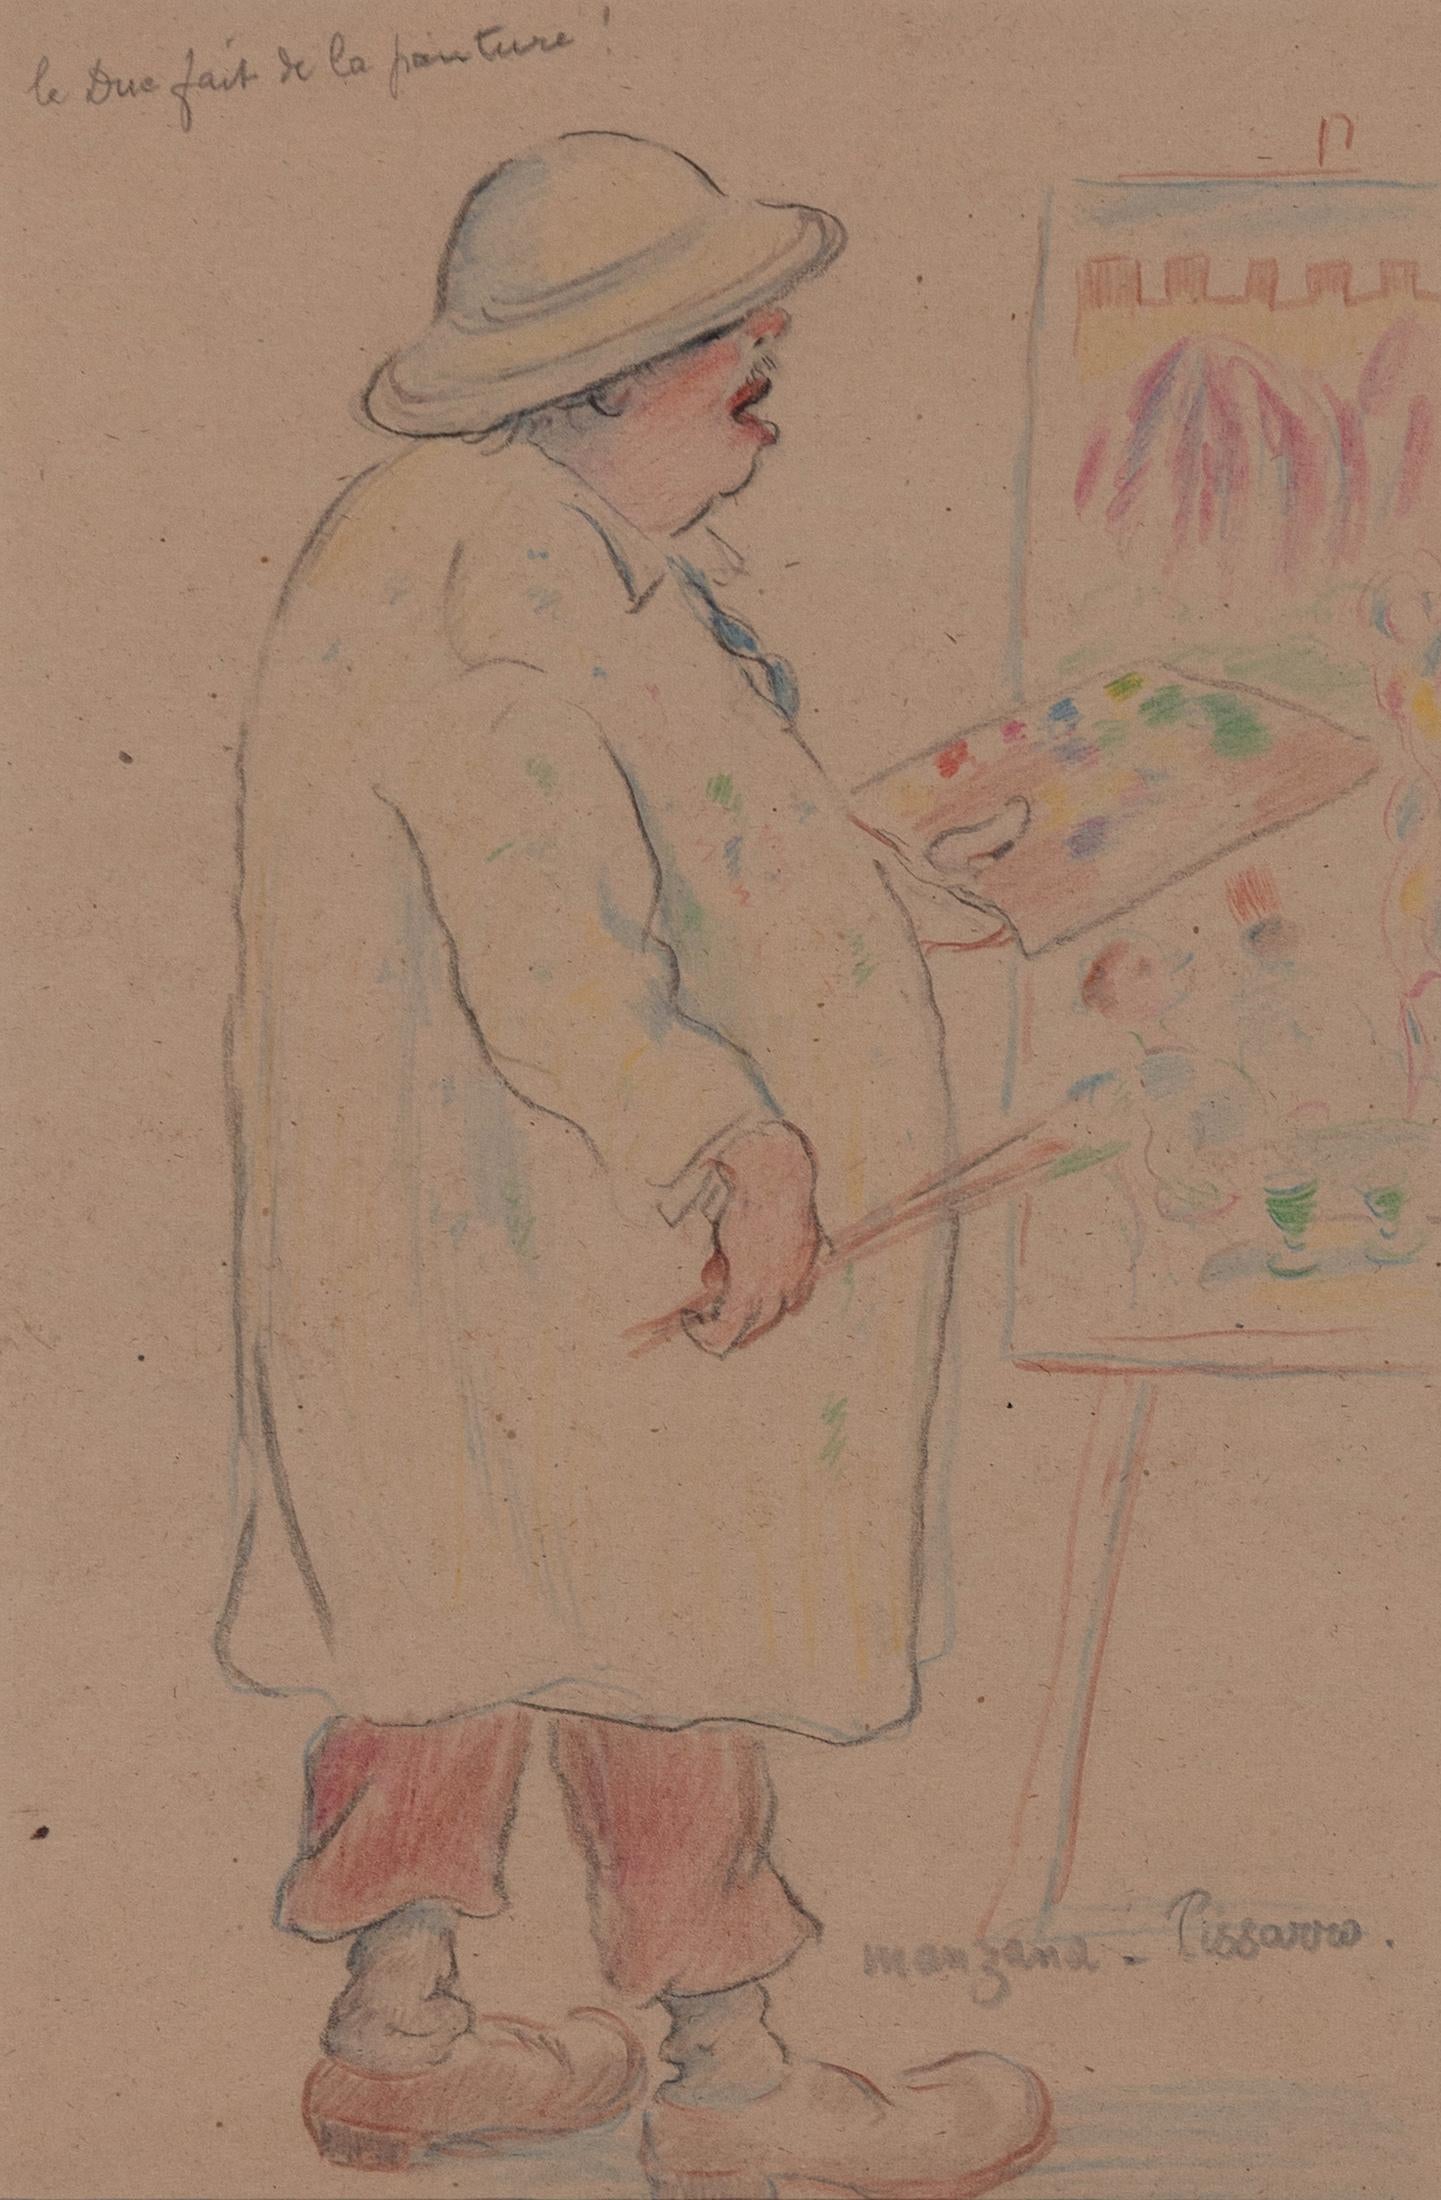 Georges Henri Manzana Pissarro Figurative Art - Le Due Fait de la Peinture by Georges Manzana Pissarro - Colourful drawing